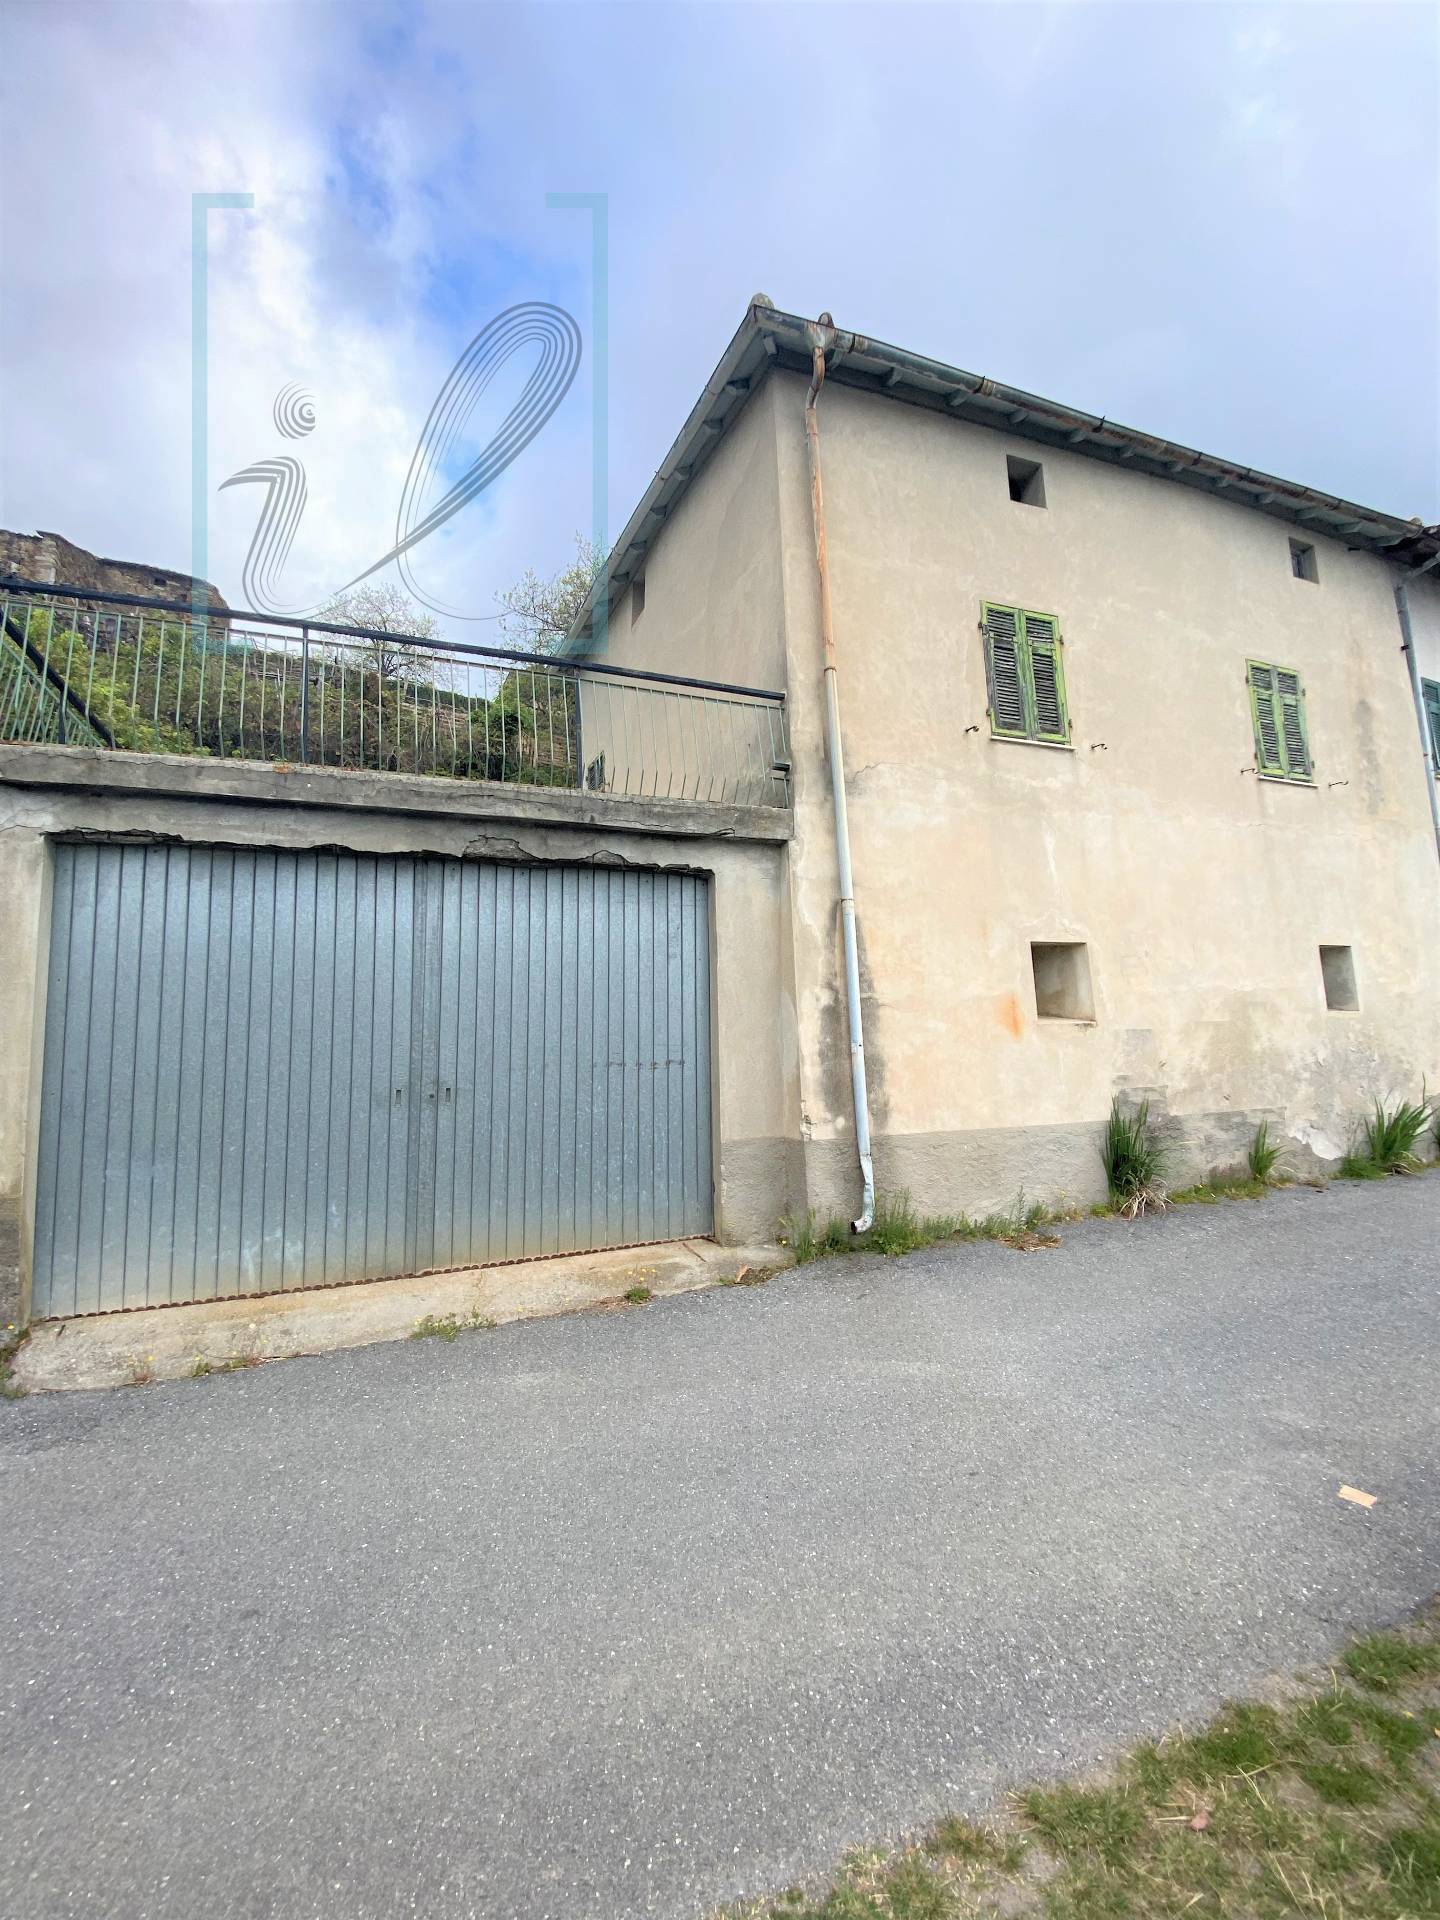 Rustico / Casale in vendita a Rialto, 7 locali, prezzo € 160.000 | PortaleAgenzieImmobiliari.it